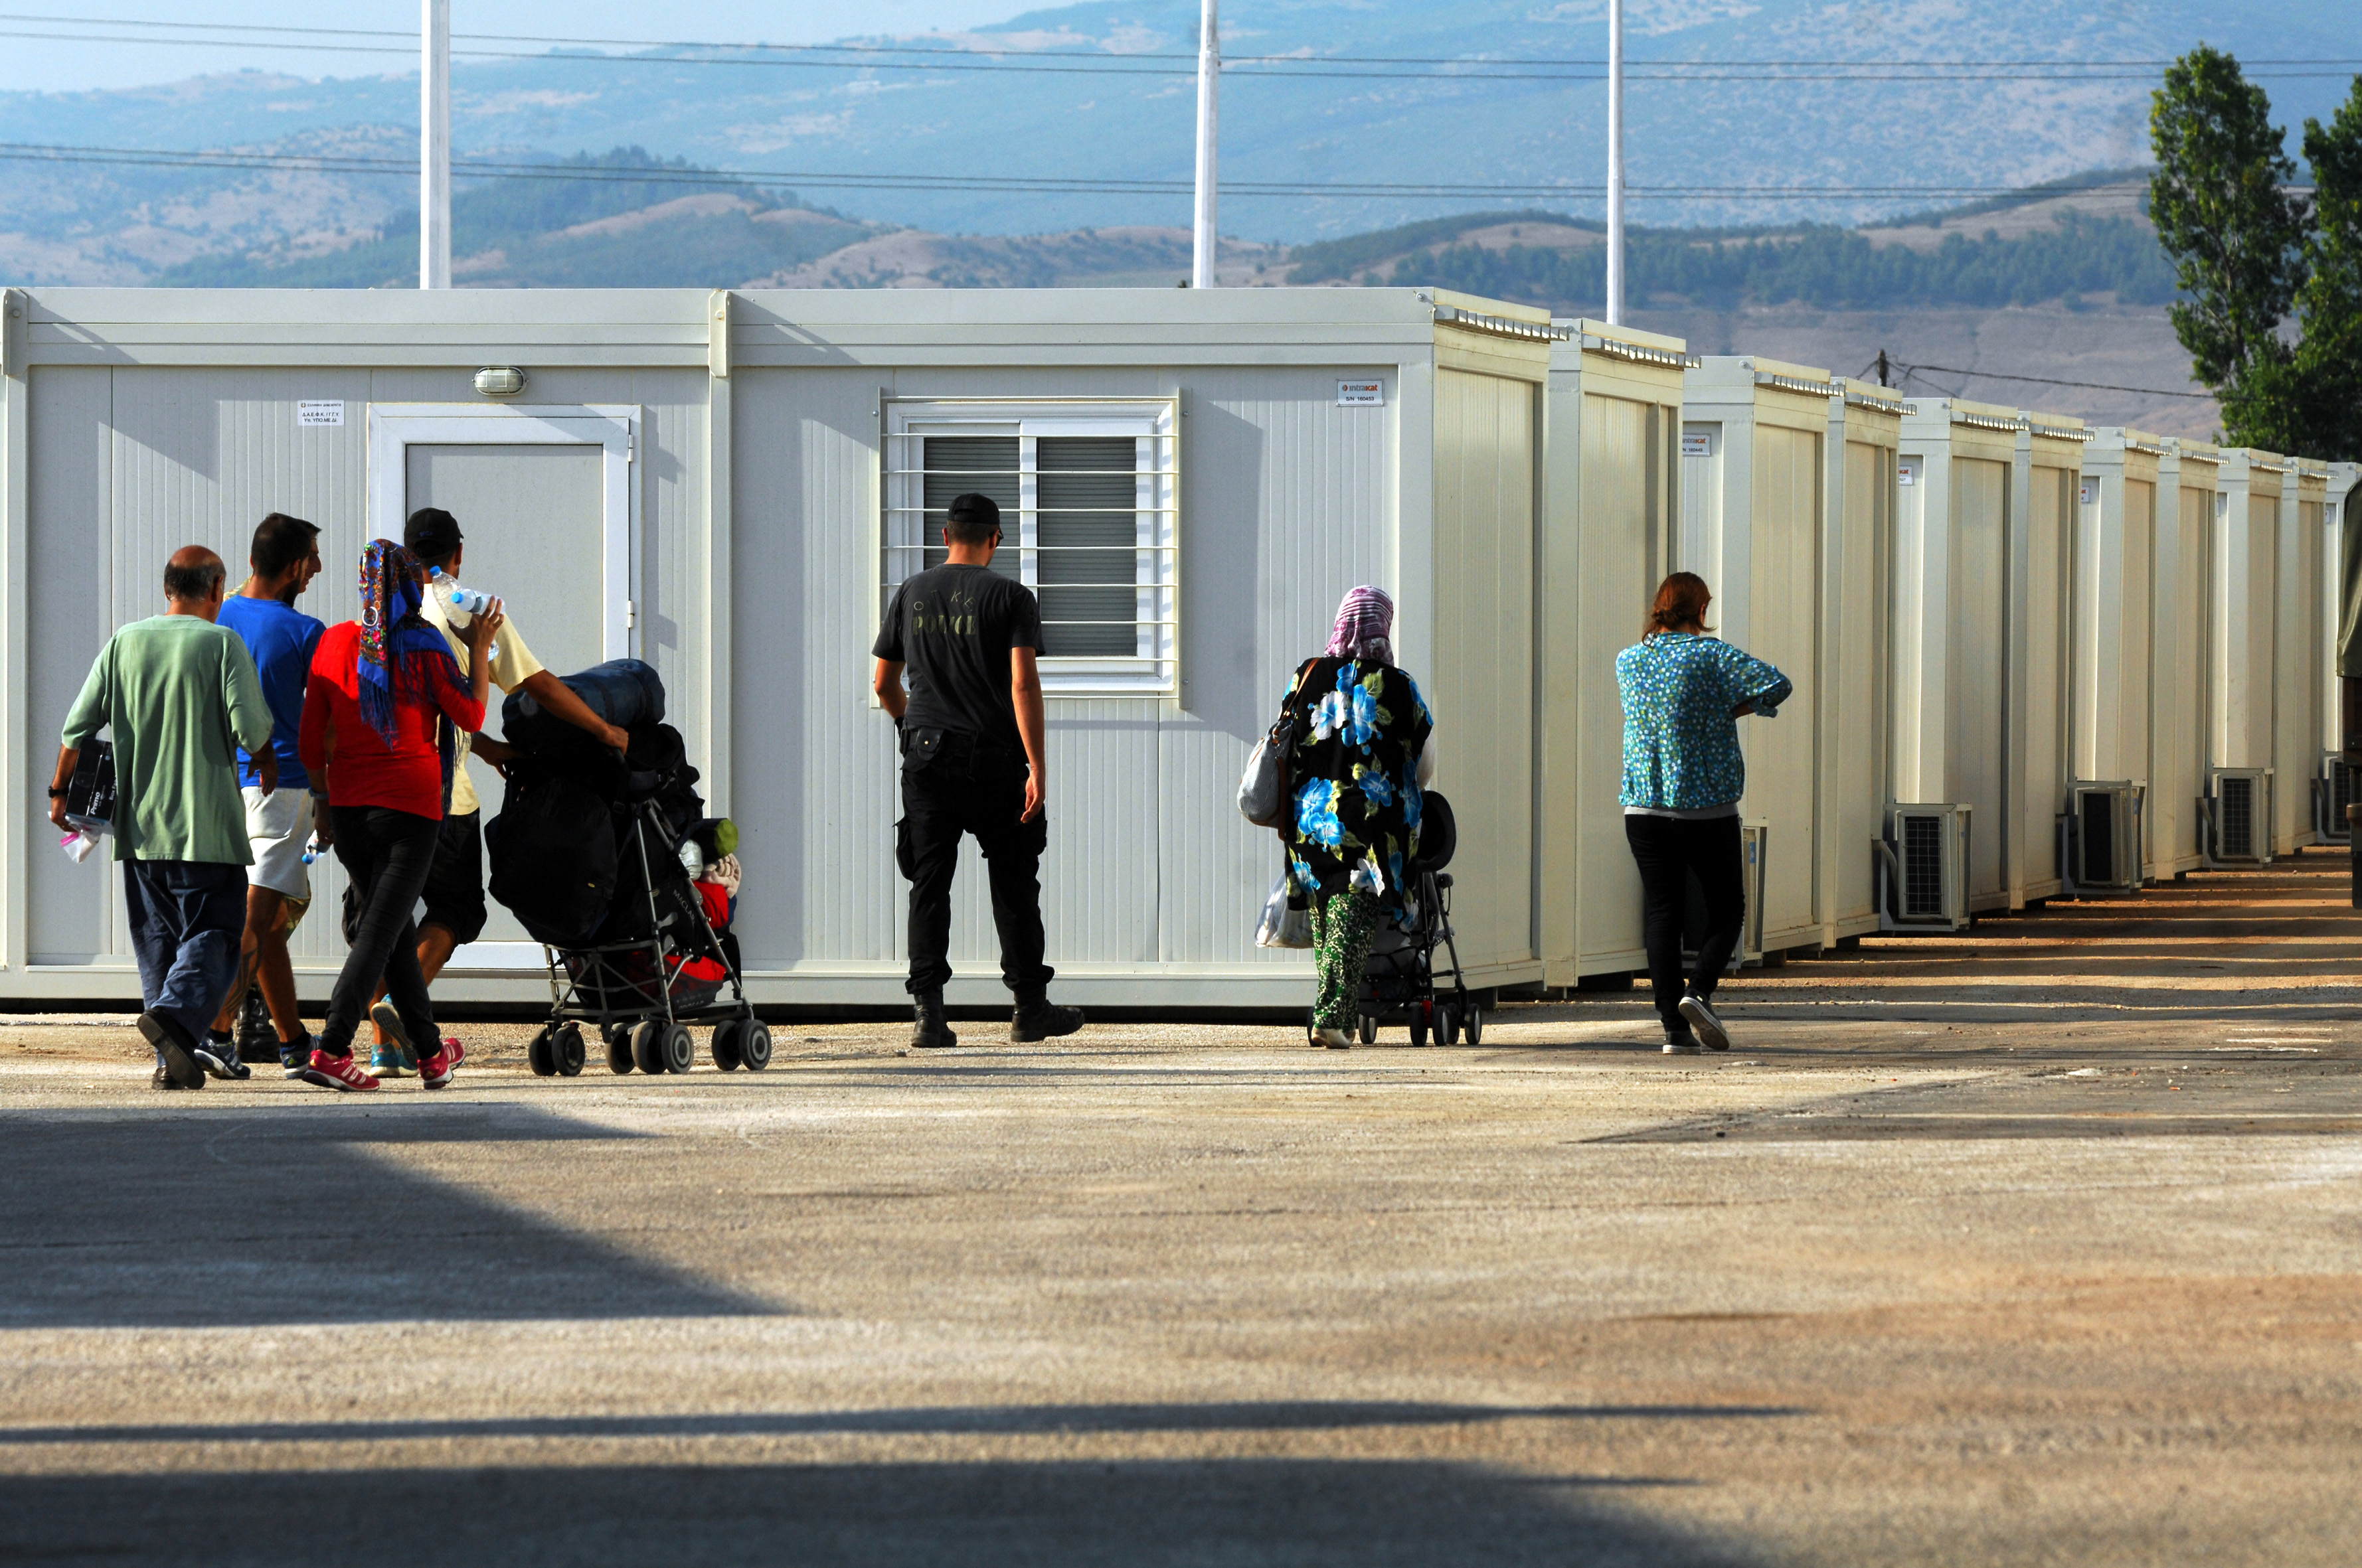 Βερολίνο: Αποποιείται την ευθύνη για τη μη διάθεση ειδικών για τους πρόσφυγες | tovima.gr